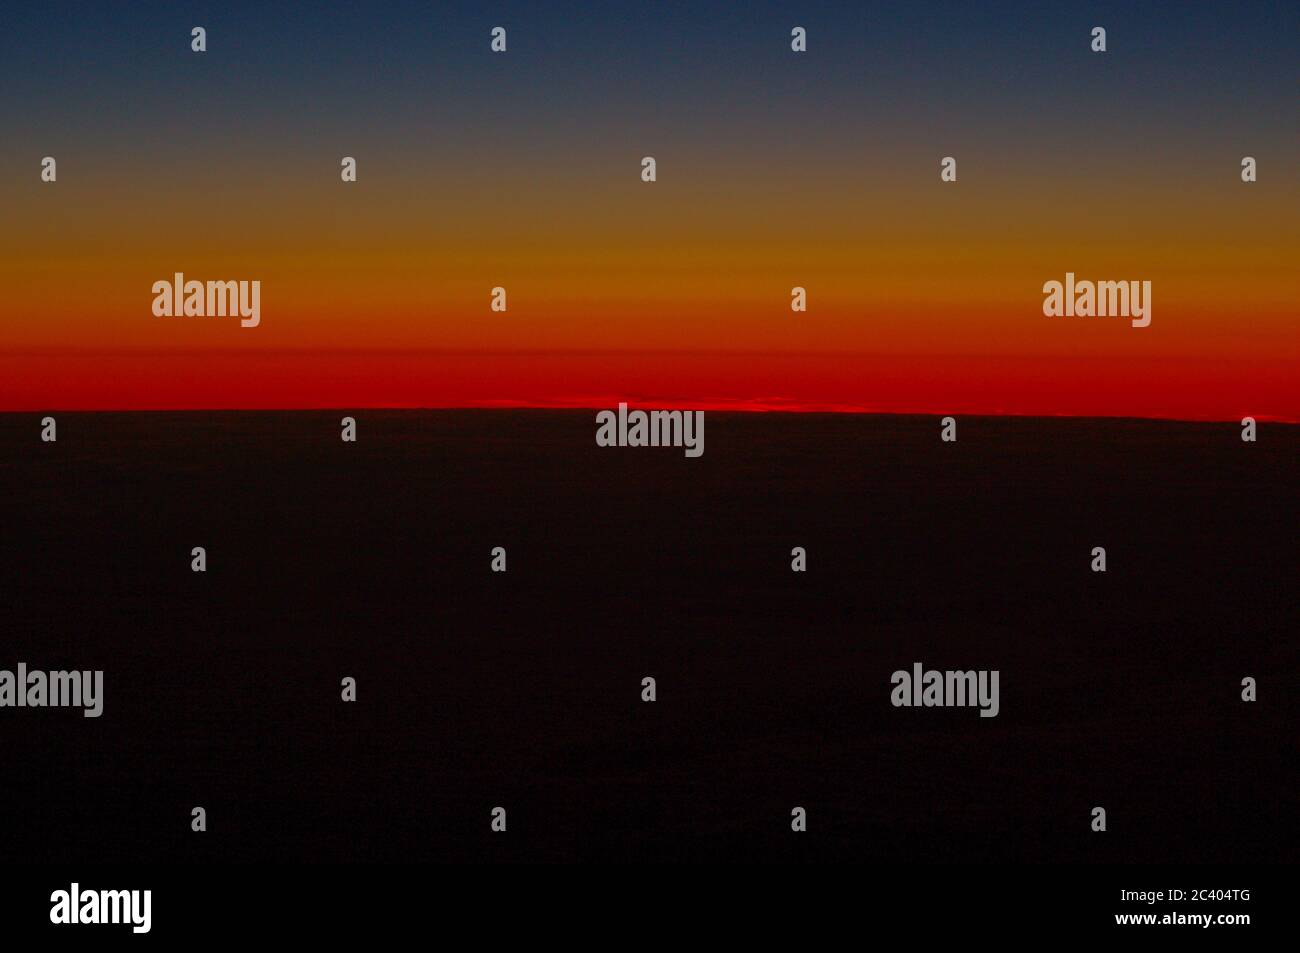 Bildfolge des gleichen Sonnenuntergangs gleicher Aussichtspunkt,Sonnenuntergang über dem Meer,Regenbogenuntergang über dem Meer,Regenbogen,Karmesin,Sonnenuntergang,Regenbogenspektrum,Sonnenuntergang, Stockfoto